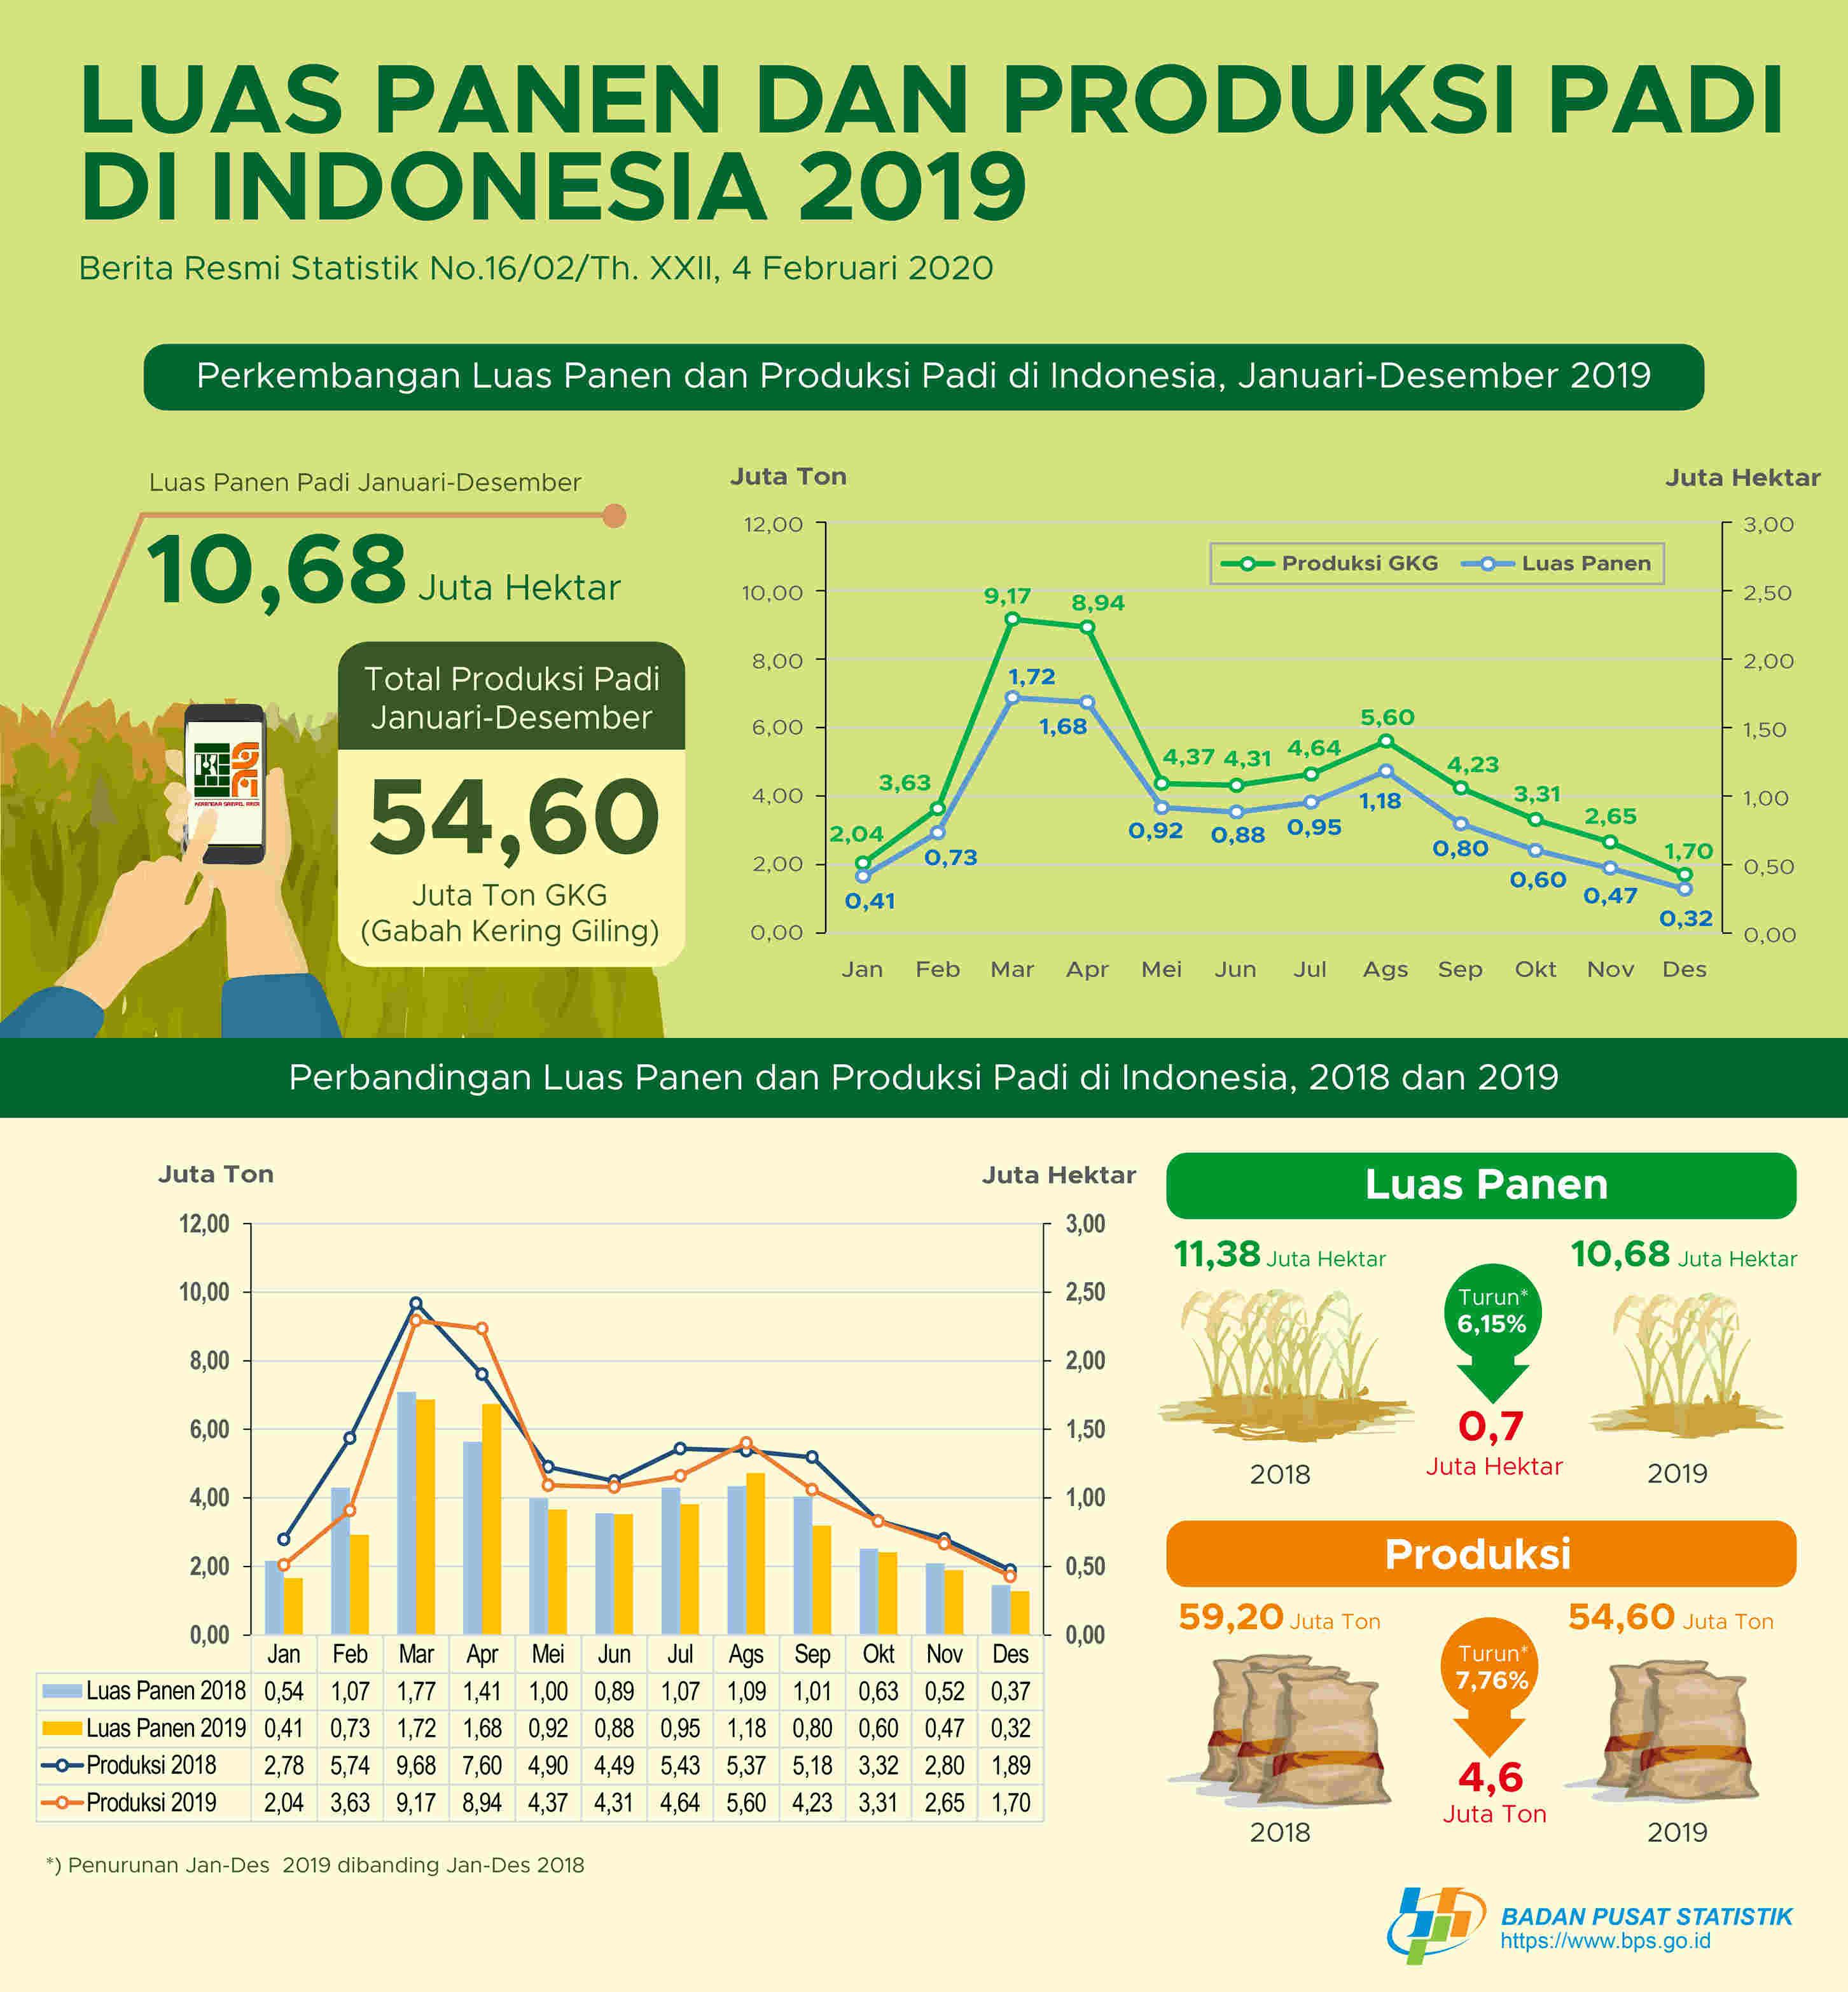 Luas panen dan produksi padi pada tahun 2019 mengalami penurunan dibandingkan tahun 2018 masing-masing sebesar 6,15 dan 7,76 persen